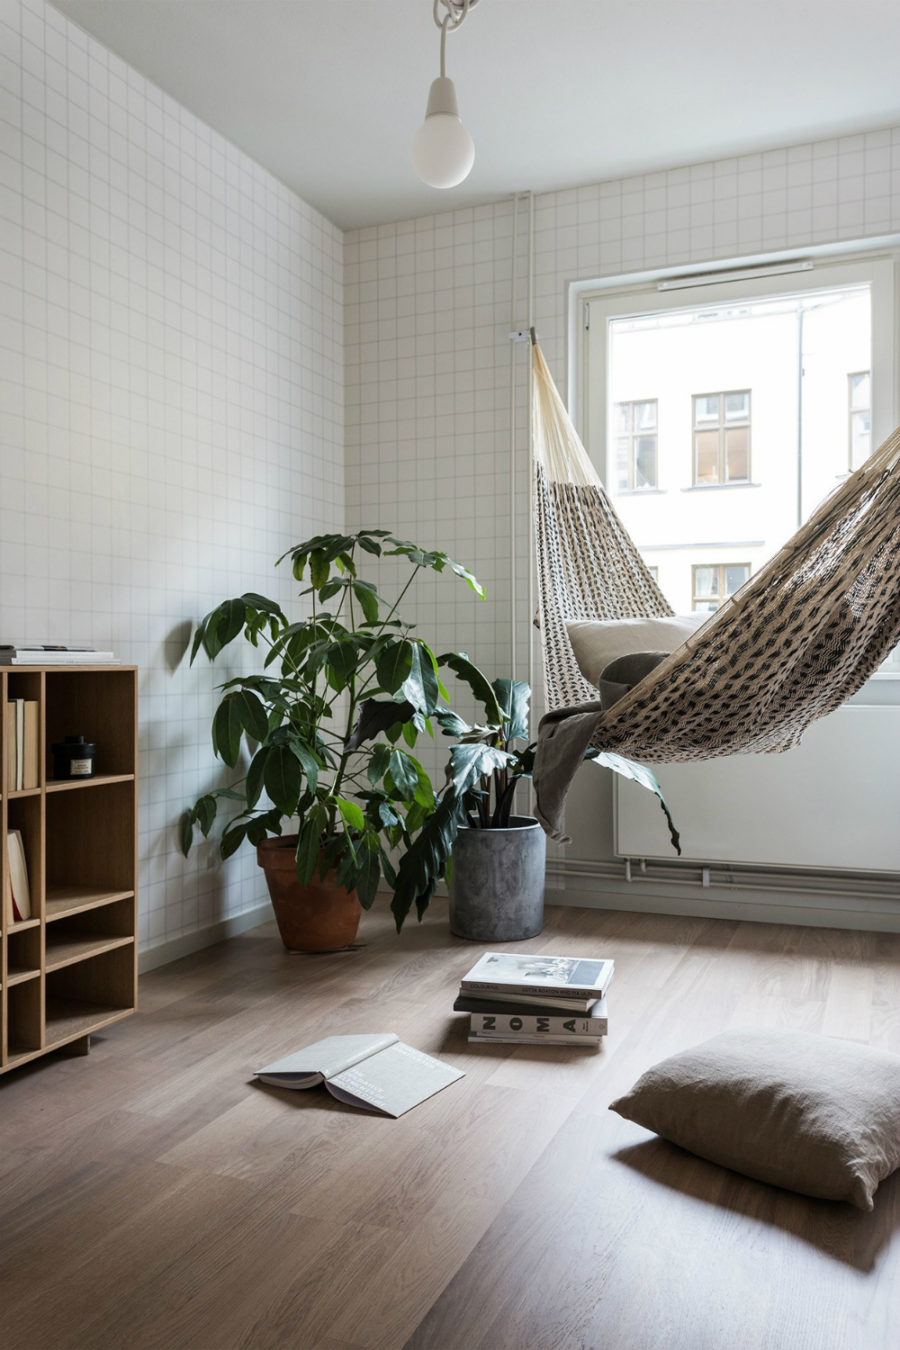 Living room hammock idea